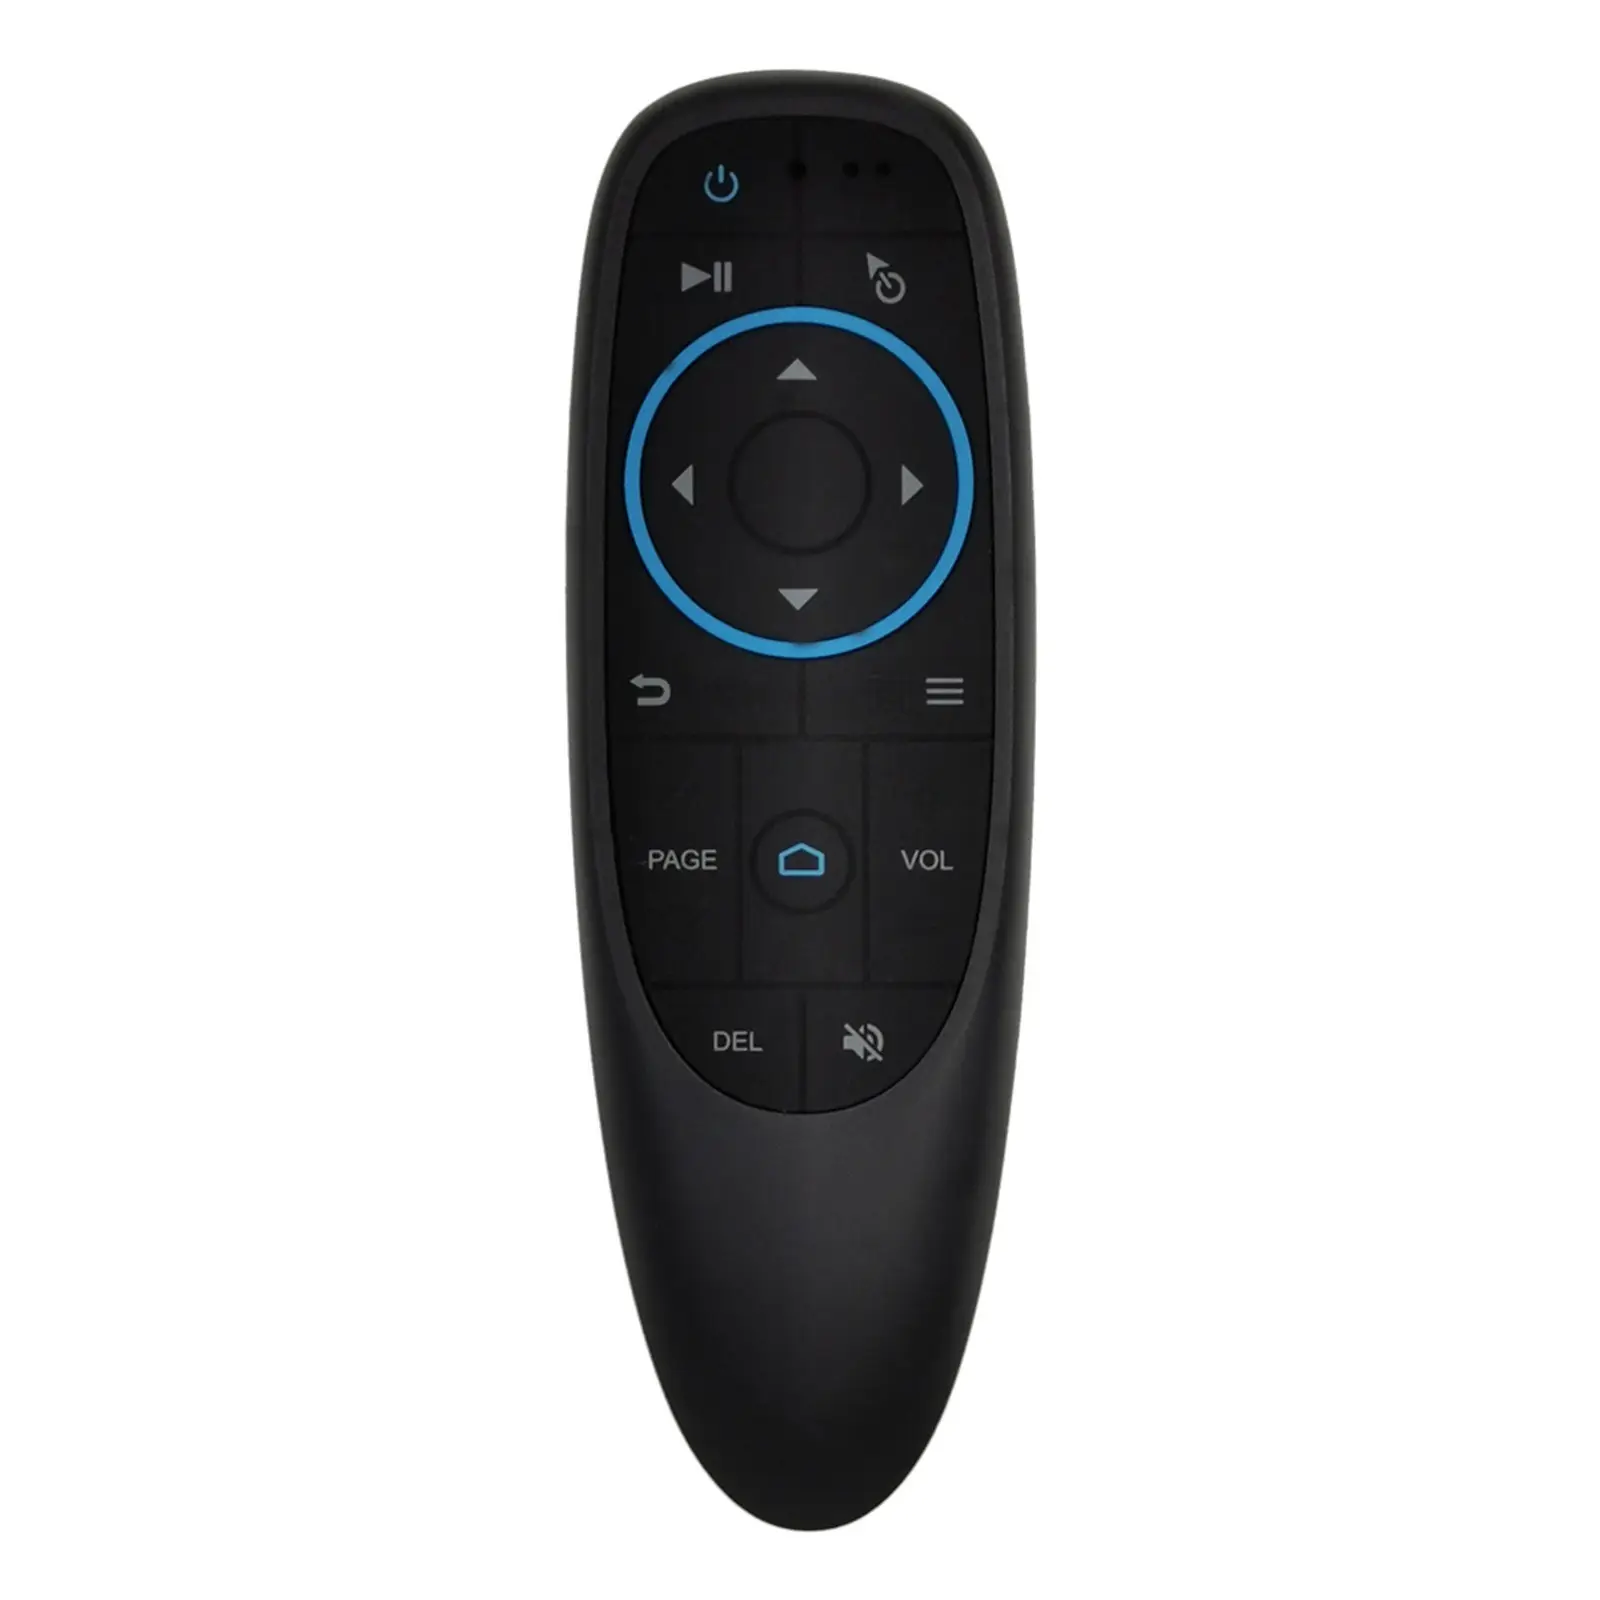 G10BTS Remote Control BT 5.0 Mouse Udara IR Belajar Giroskop Nirkabel Infra Merah Pengendali Jarak Jauh untuk Kotak TV Android HTPC PCTV